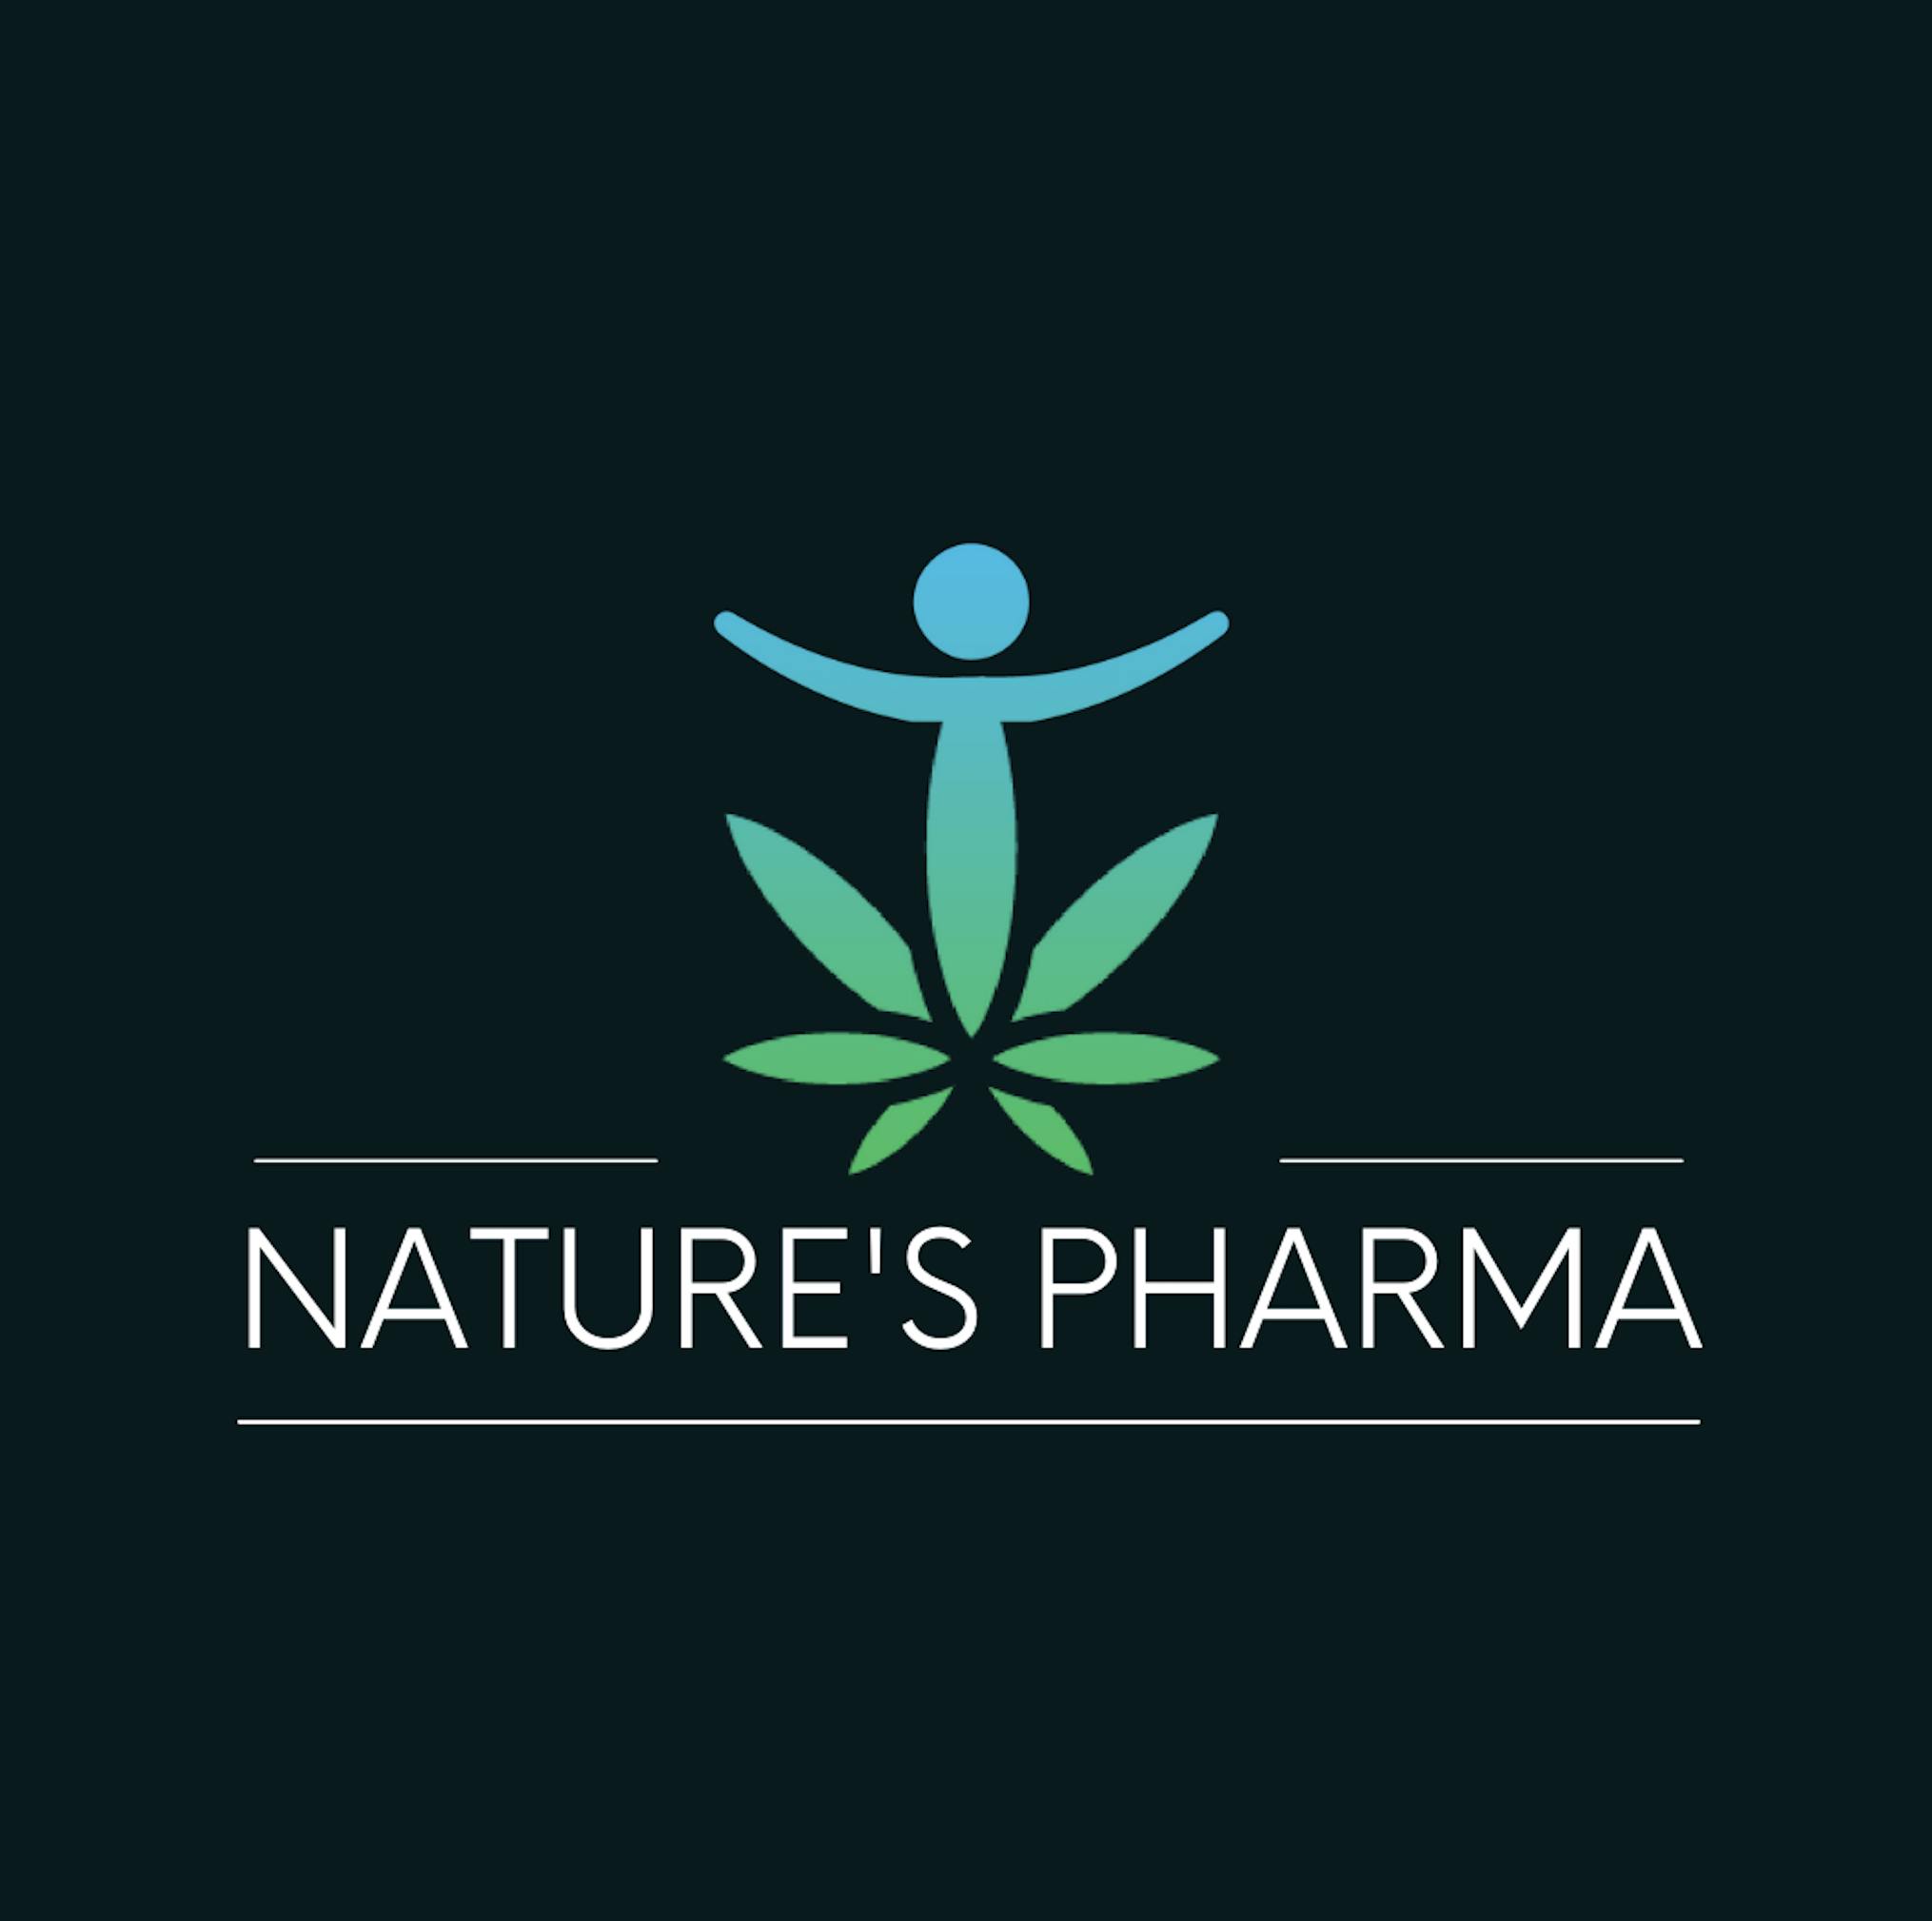 Nature's Pharma